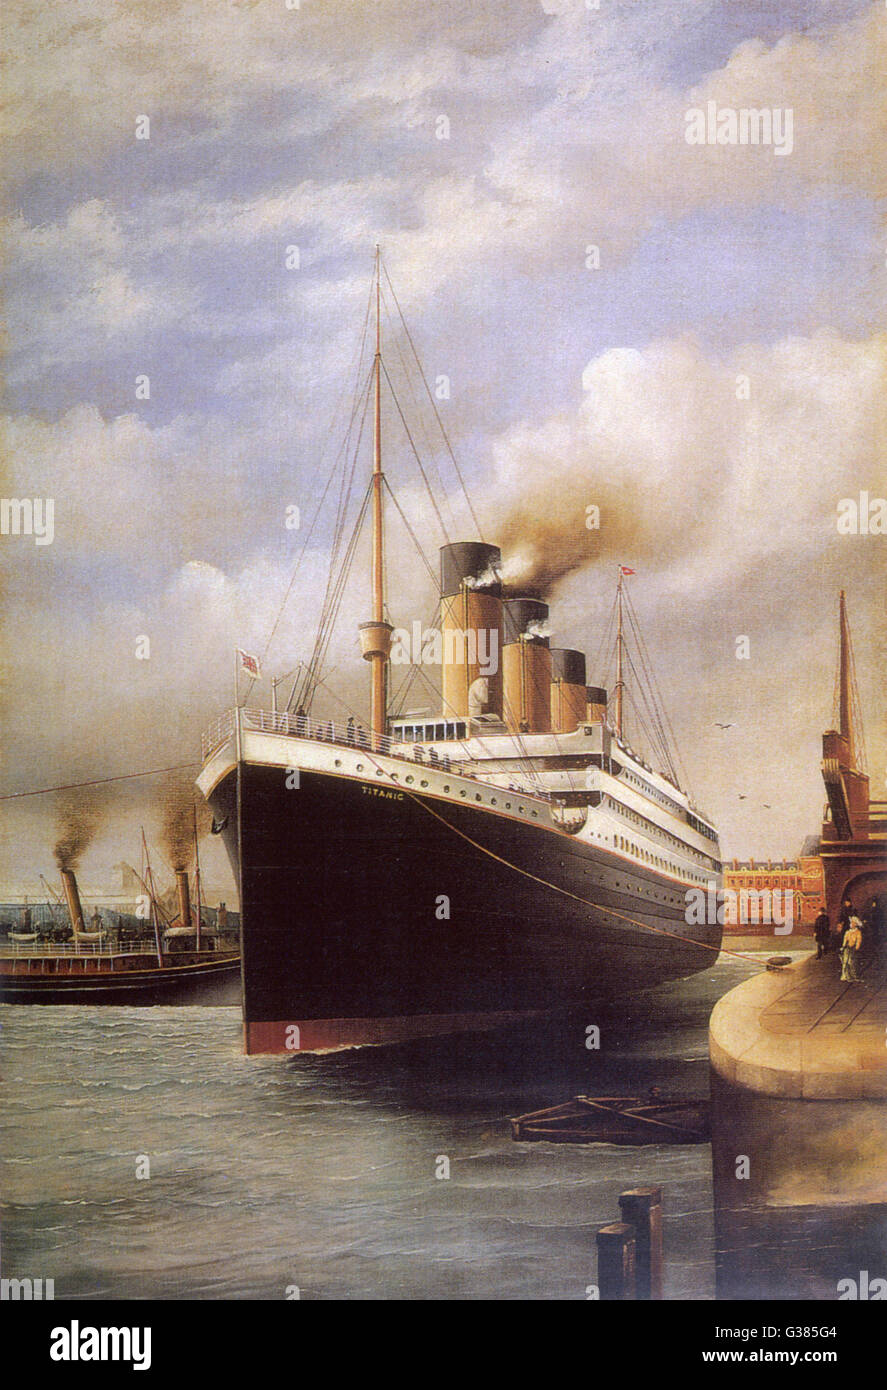 Die Titanic angedockt, bevor ihre verhängnisvolle Reise Datum: 1912 Stockfoto